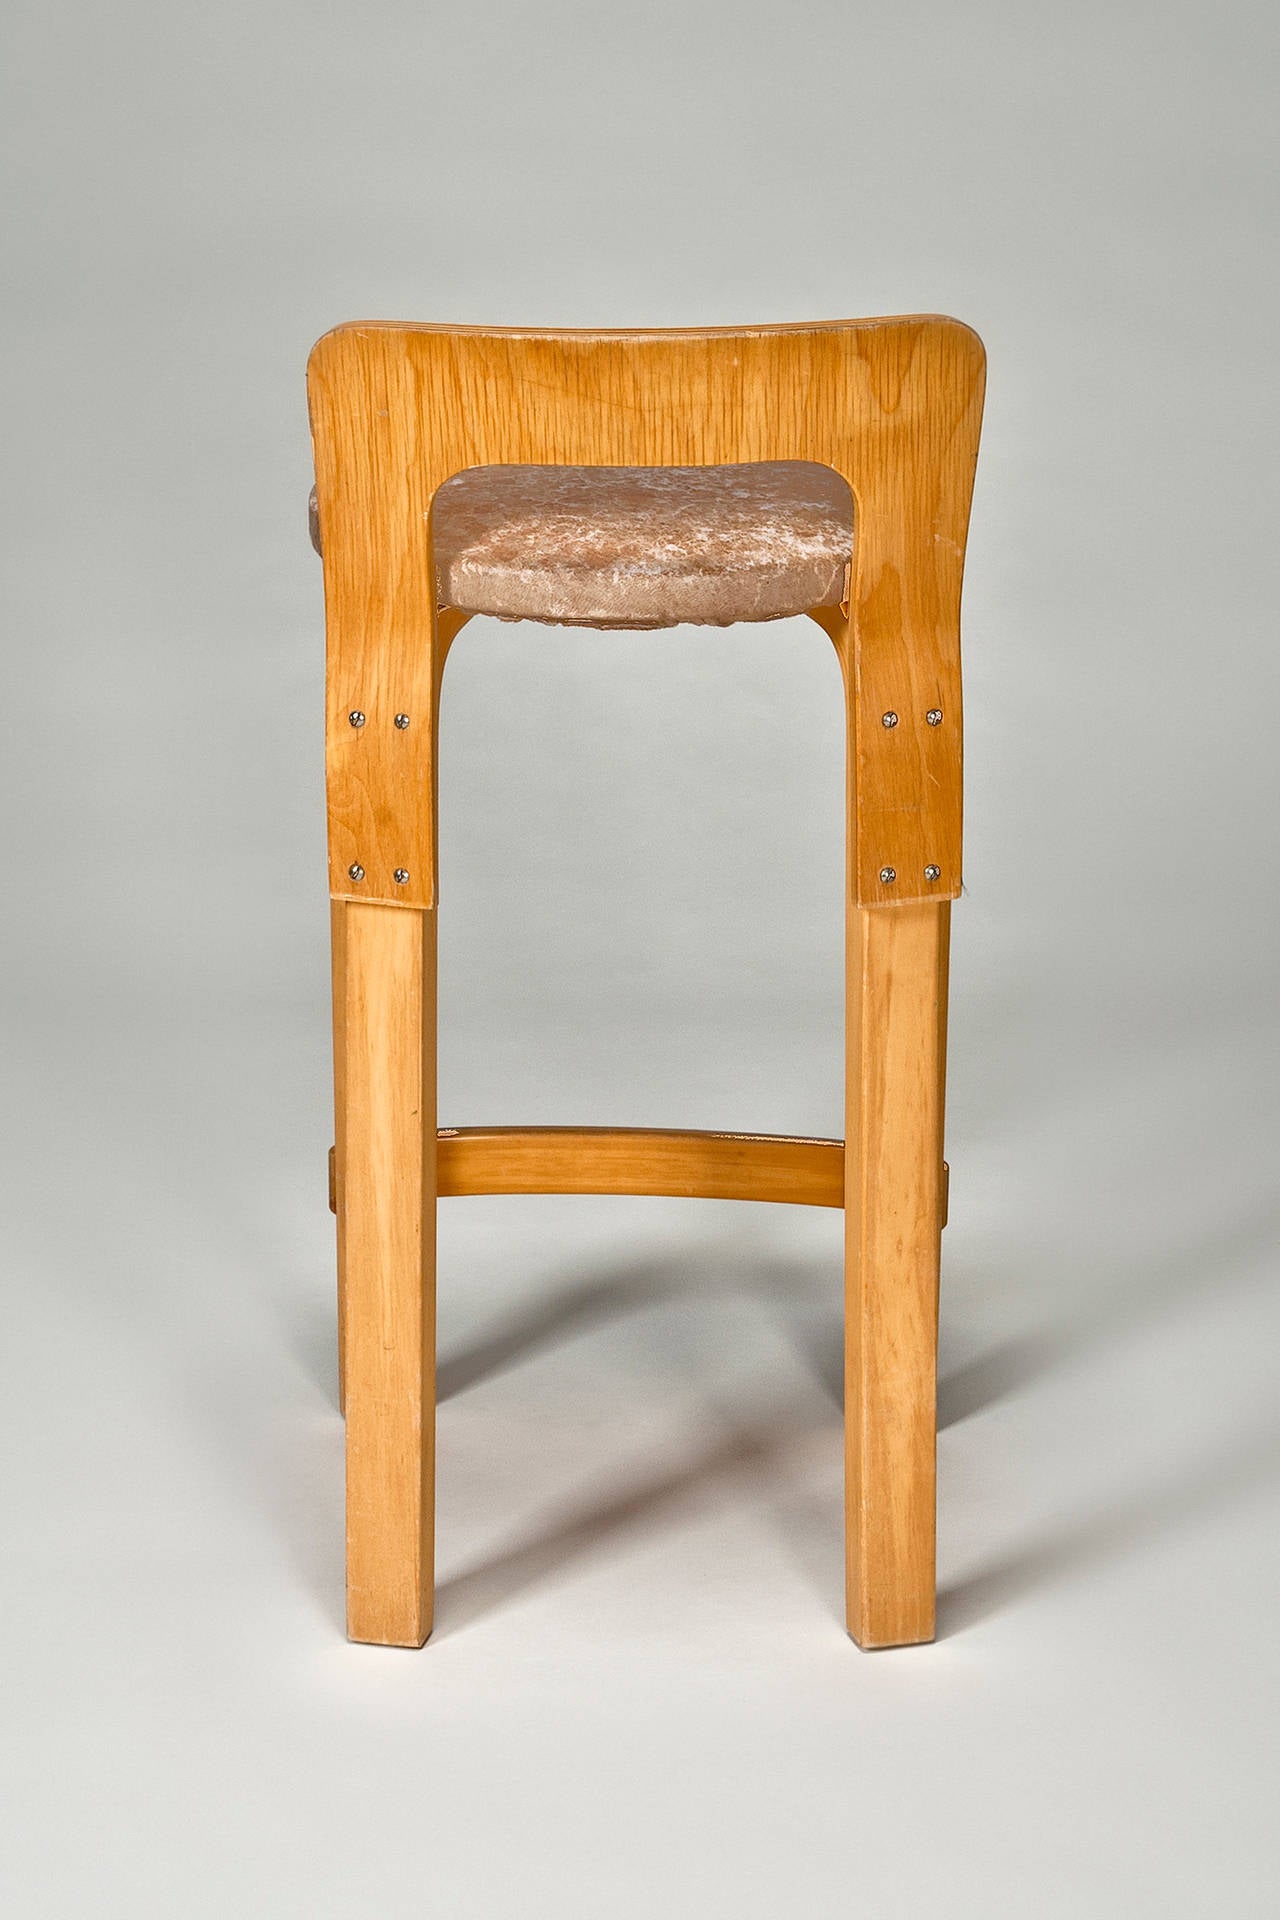 Scandinavian Modern High Chair K65 'Set of 4' by Alvar Aalto from Artek 2nd Cycle